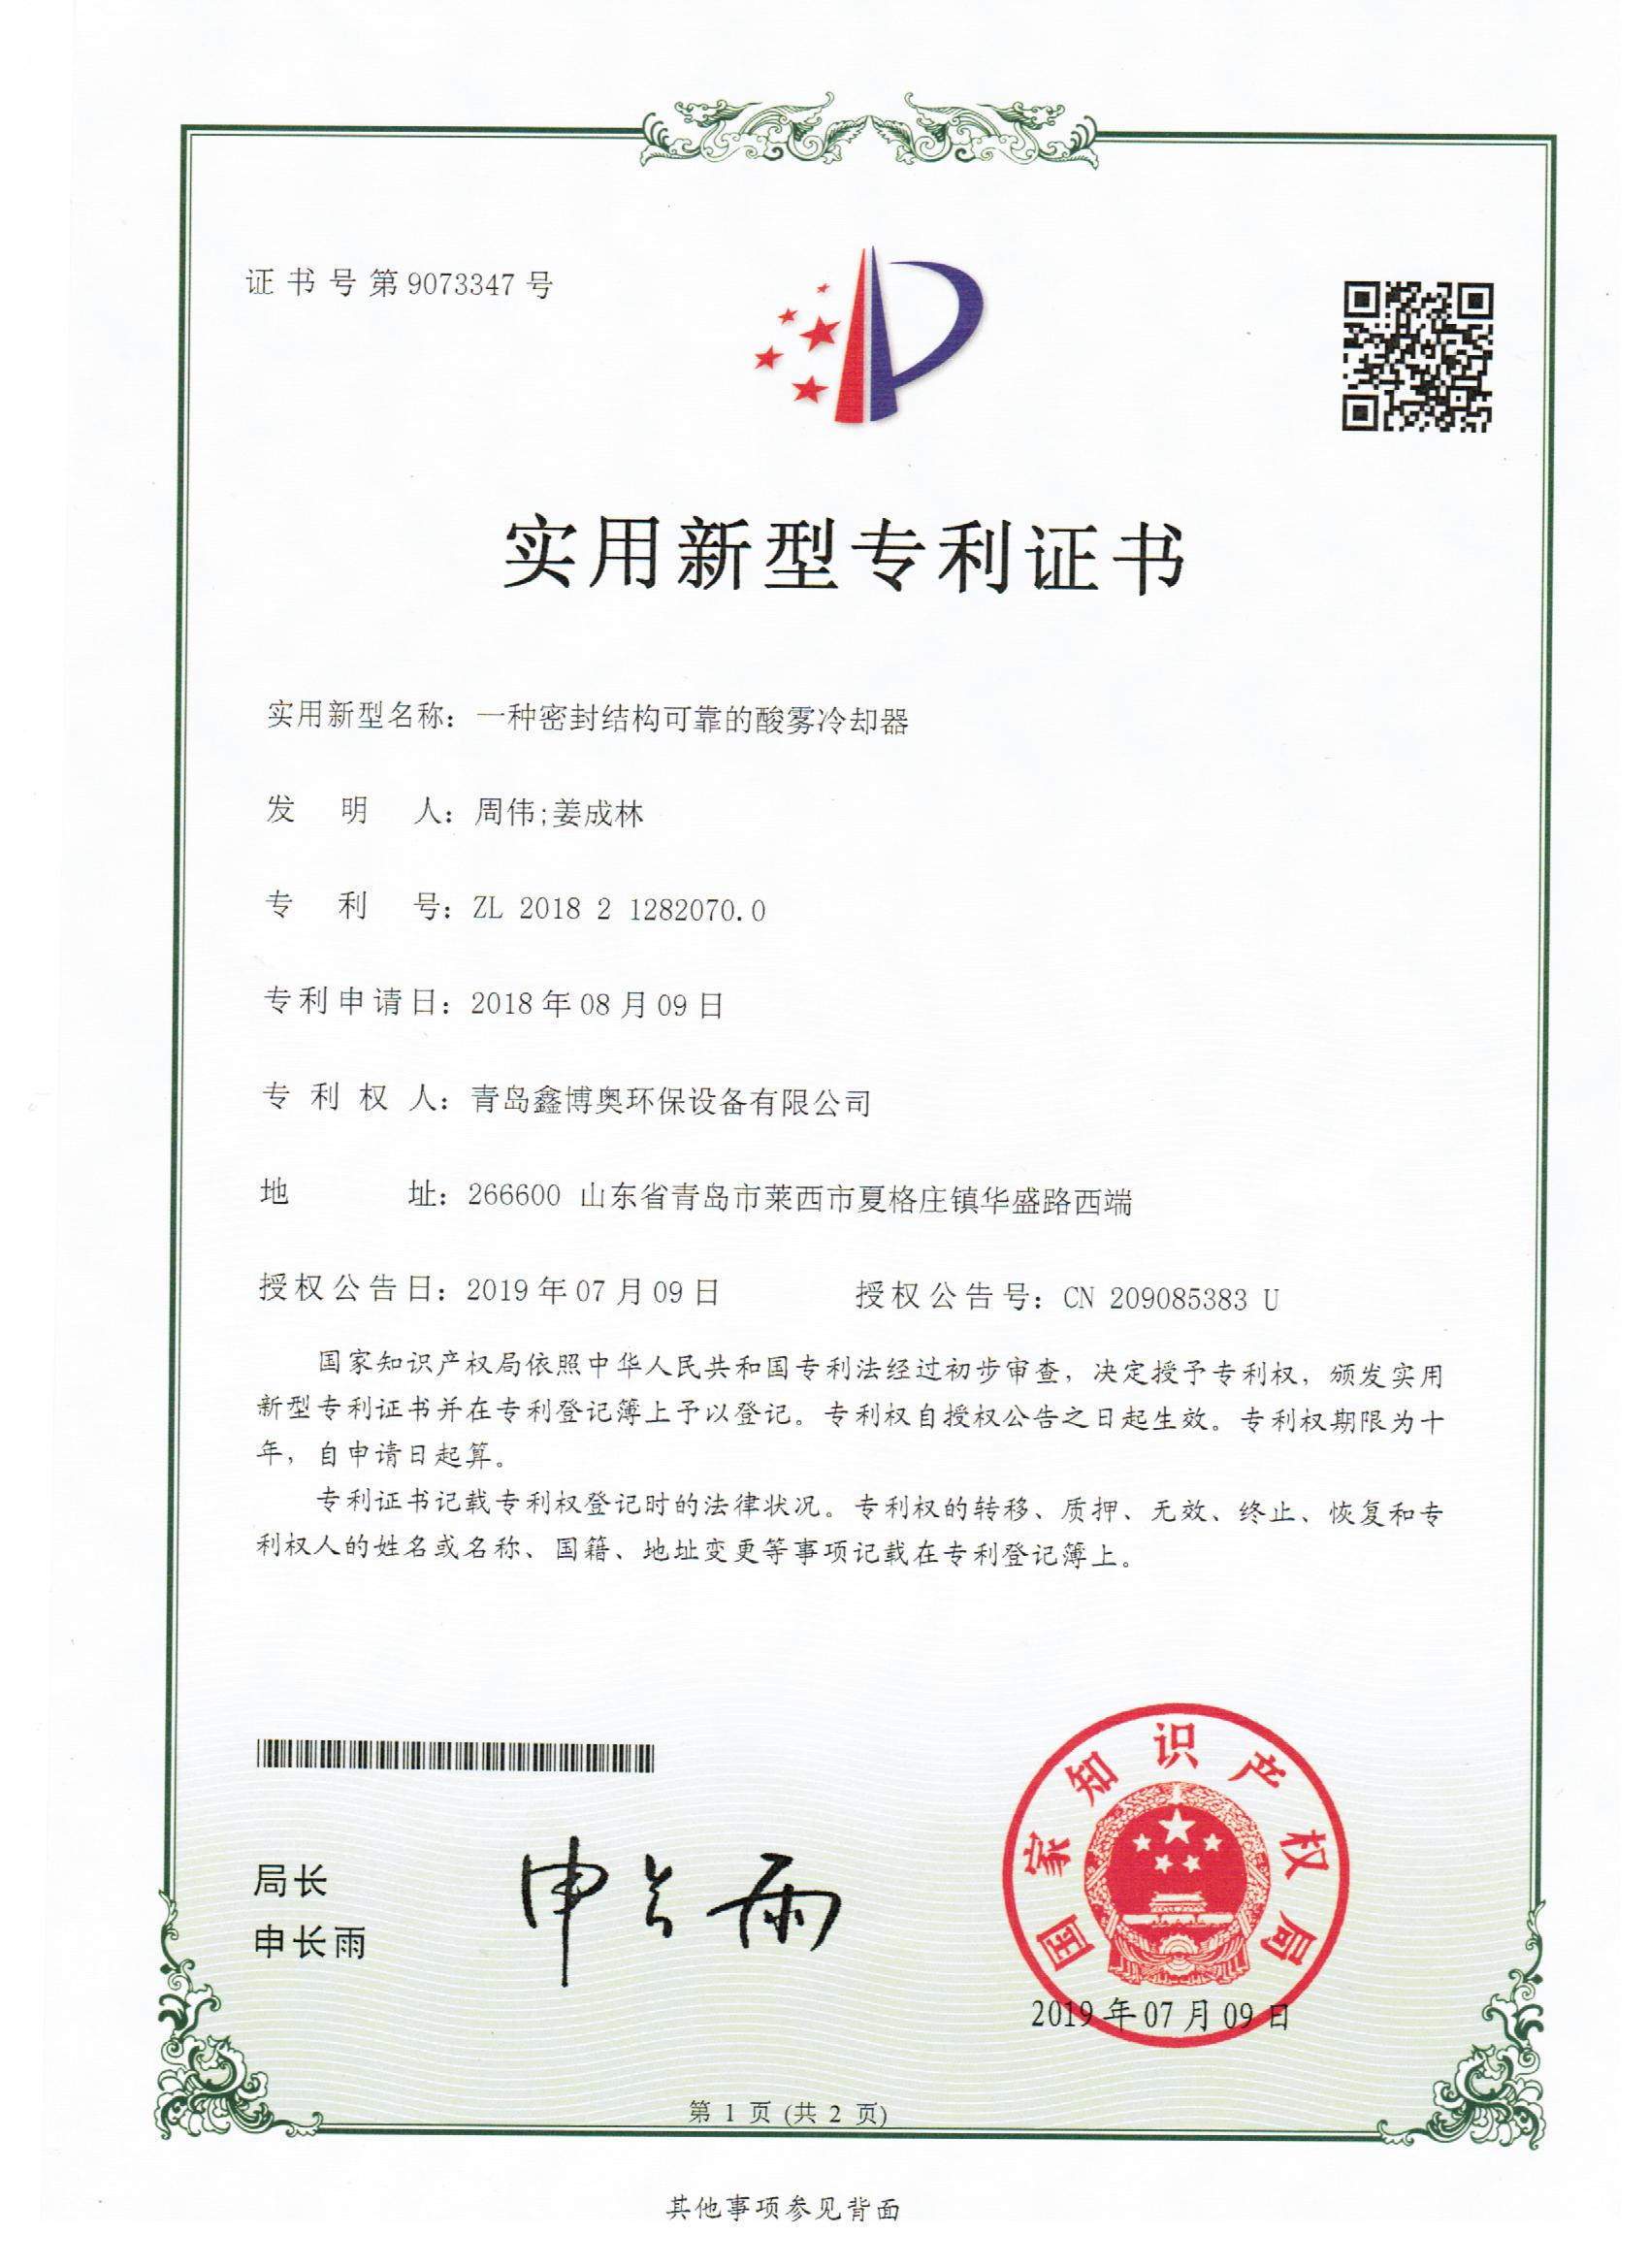 山东鑫博奥新型密封结构可靠的酸雾冷凝器实用新型专利证书